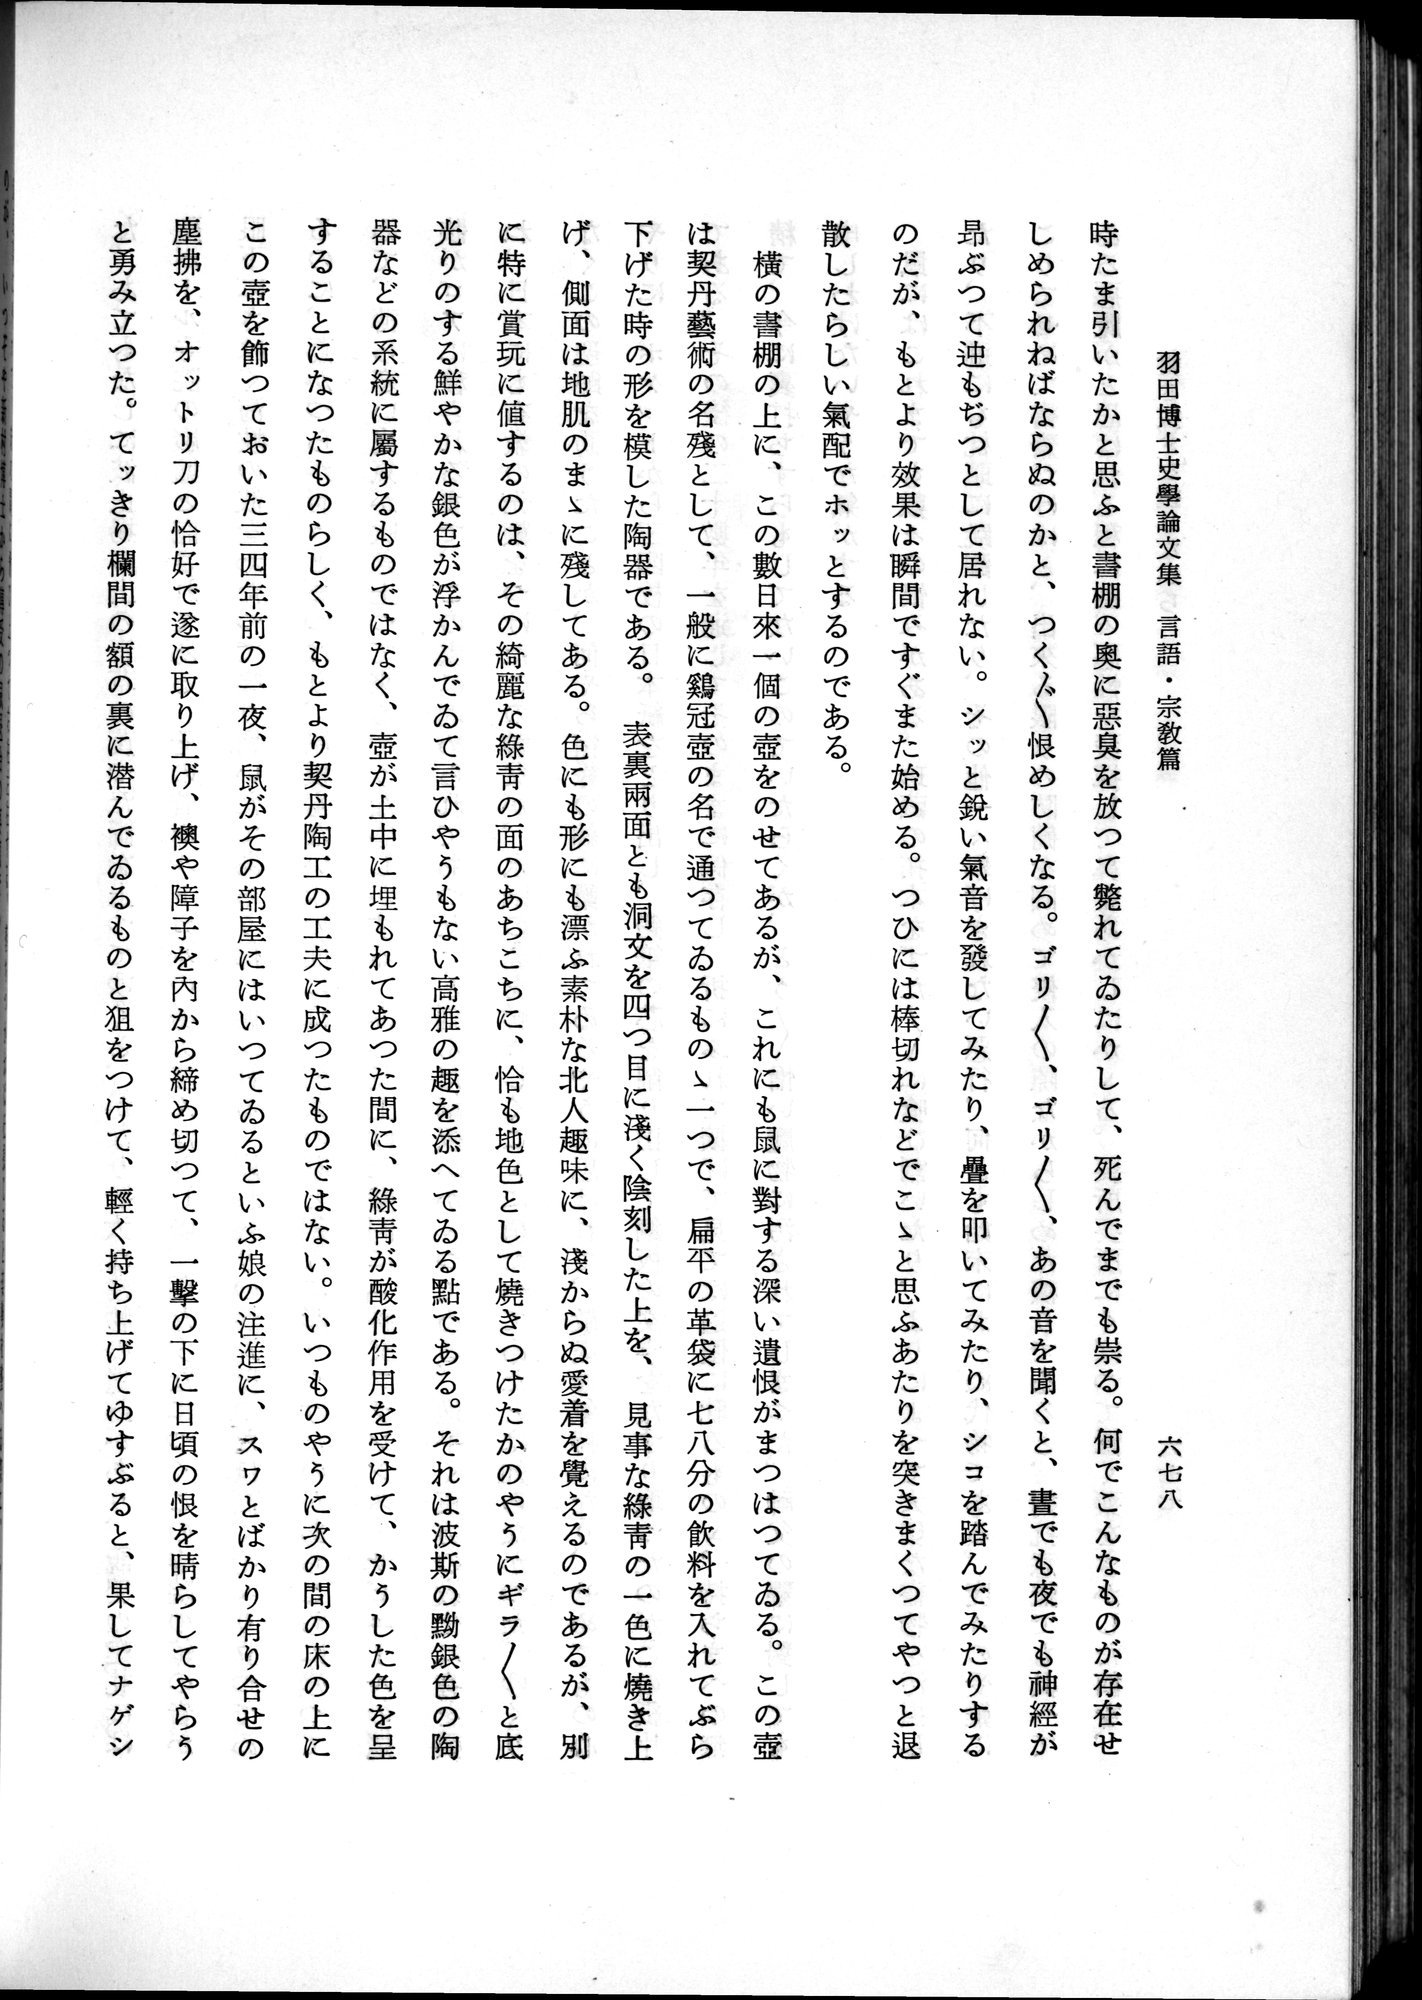 羽田博士史学論文集 : vol.2 / 742 ページ（白黒高解像度画像）